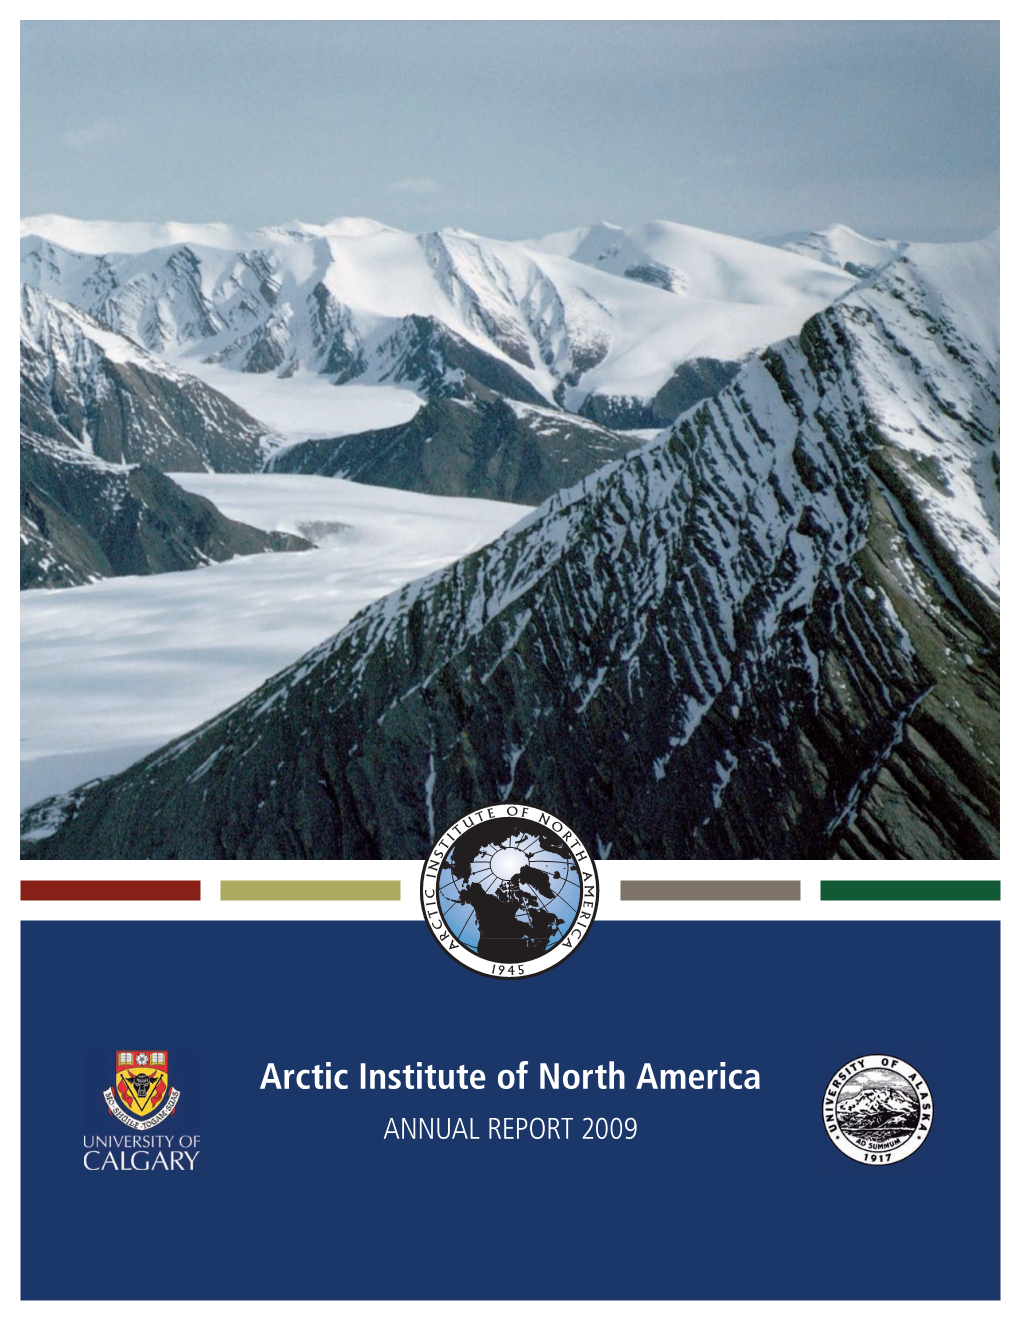 Arctic Institute of North America ANNUAL REPORT 2009